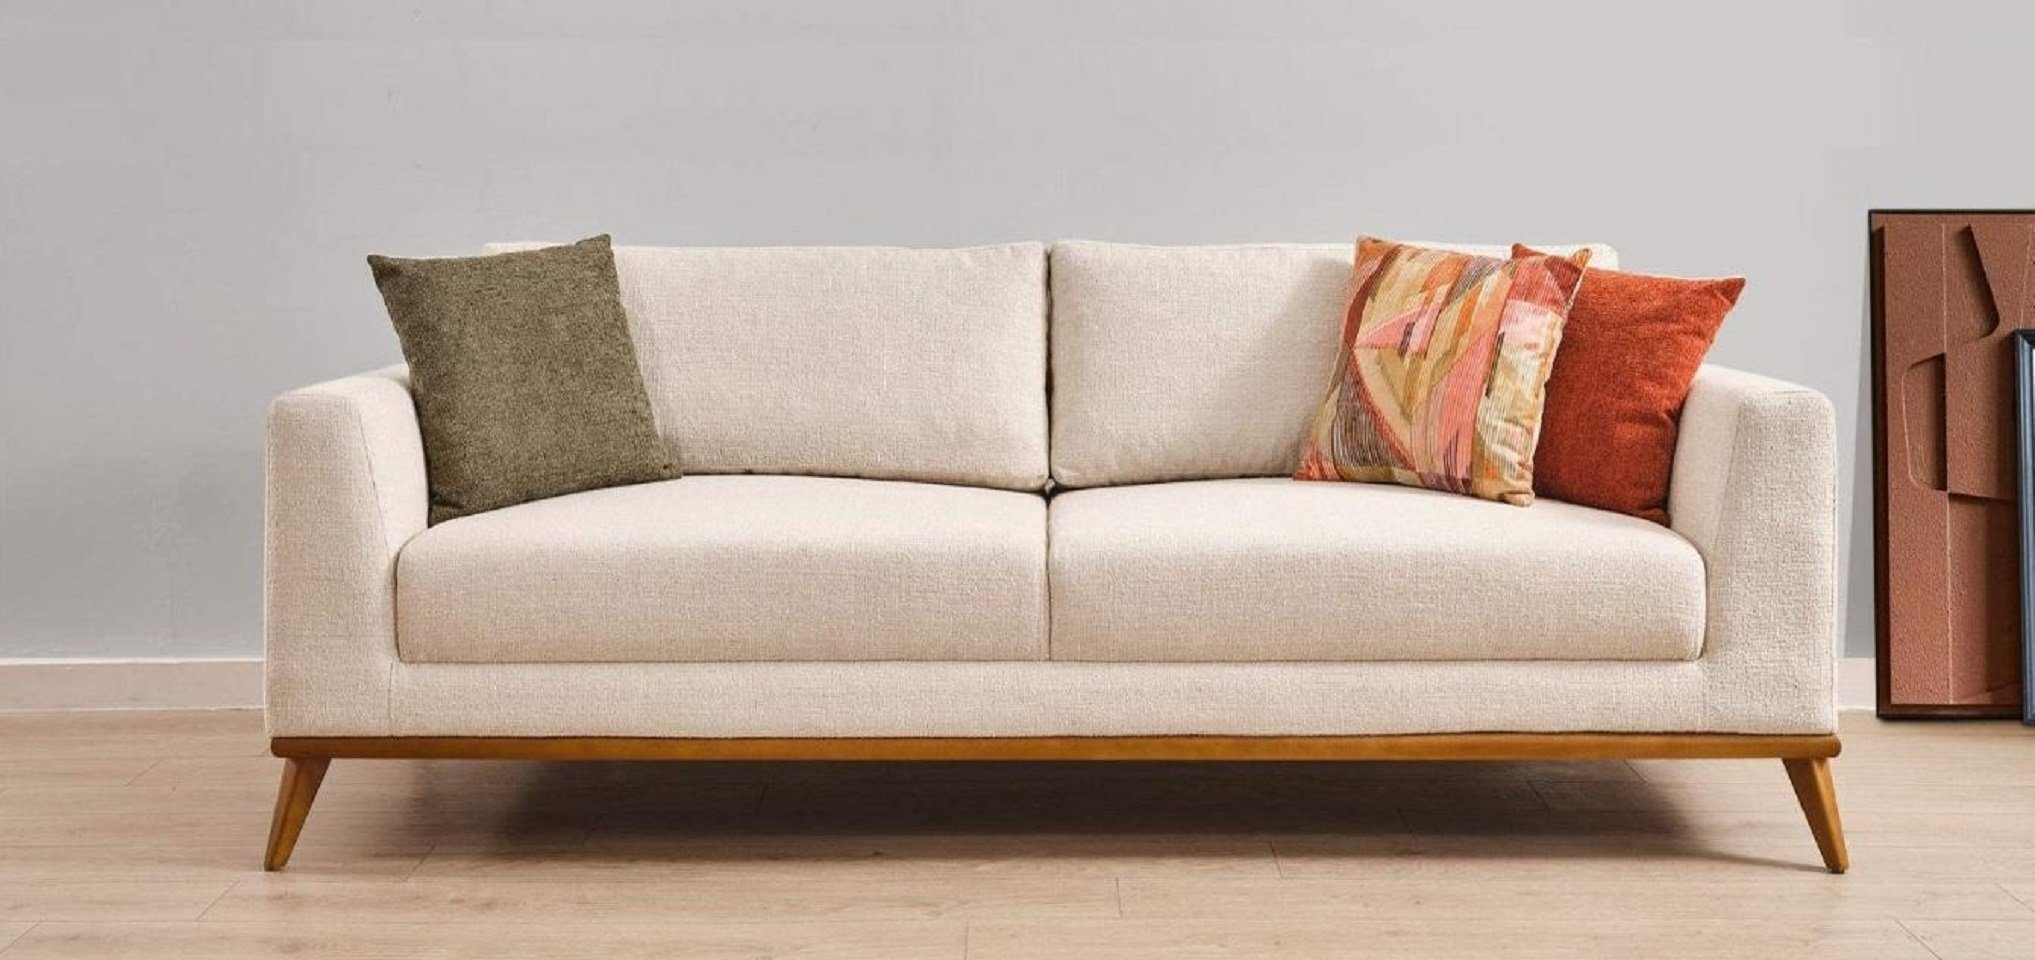 JVmoebel 3-Sitzer Stilvoll Sofa 3 Sitzer Design Möbel Wohnzimmer Luxus Sofas 223cm, 1 Teile, Made in Europe